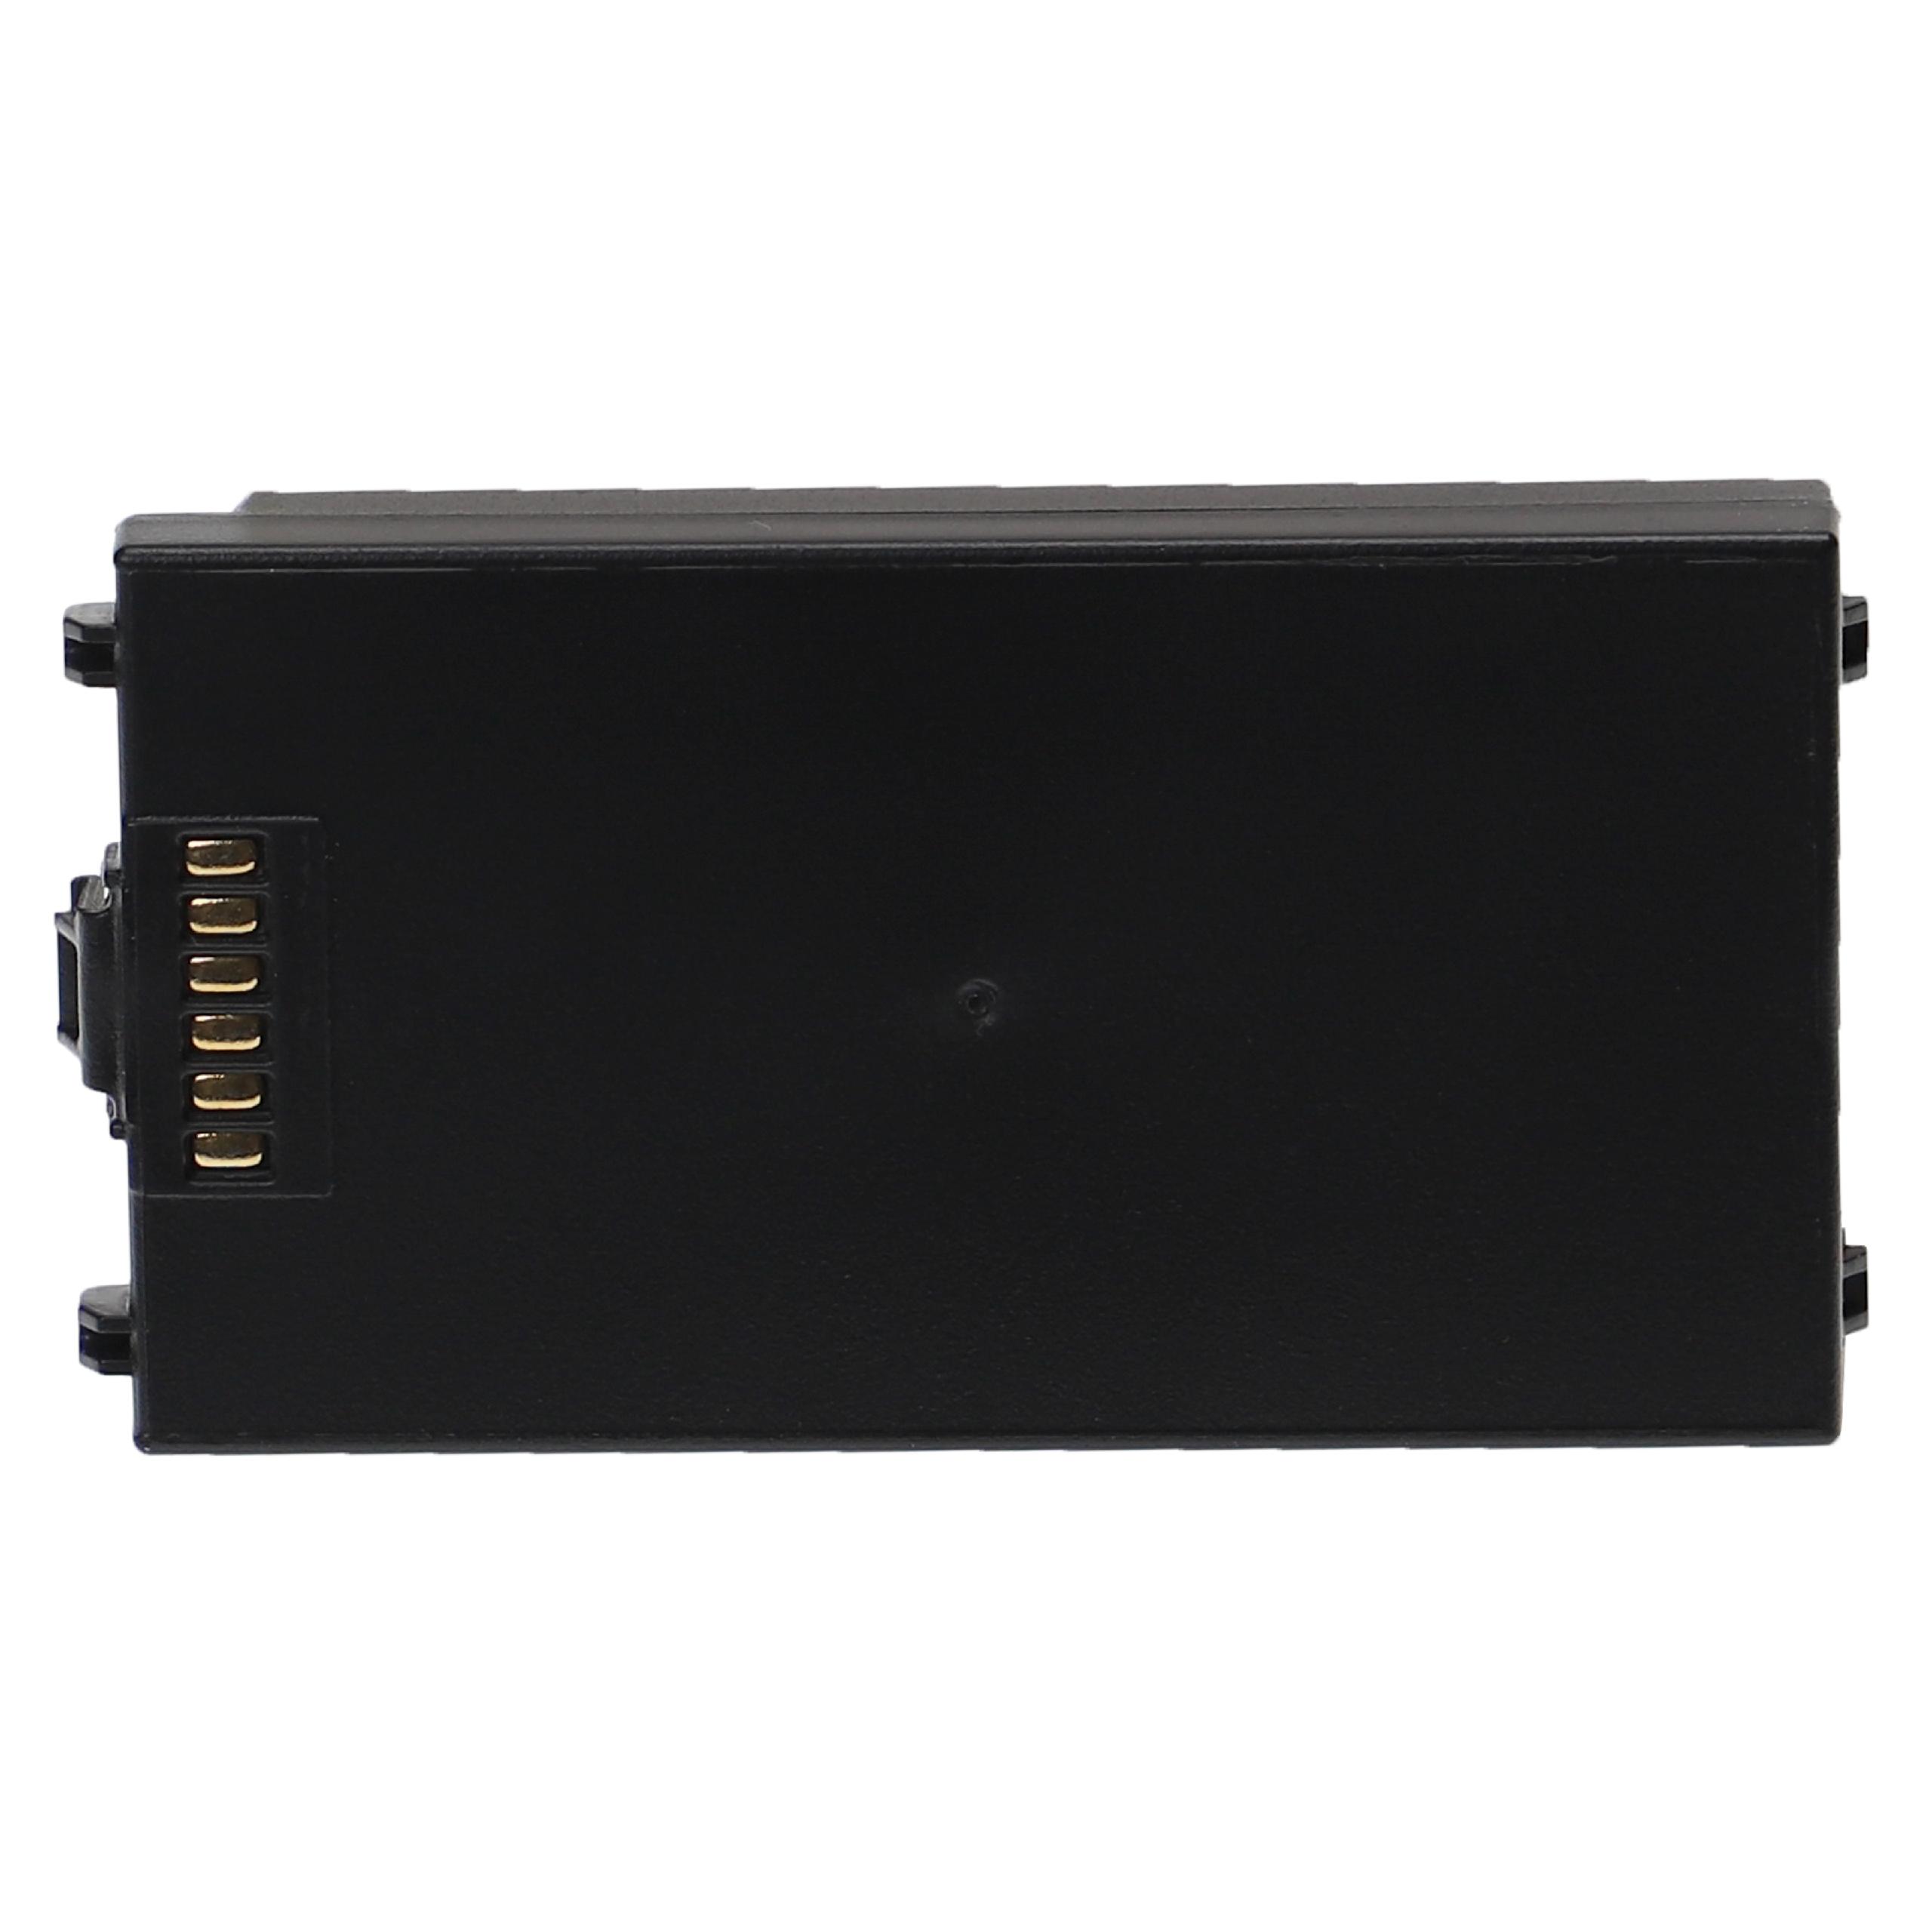 Batería reemplaza Symbol 55-002148-01 para escáner de código de barras Symbol - 4400 mAh 3,7 V Li-Ion